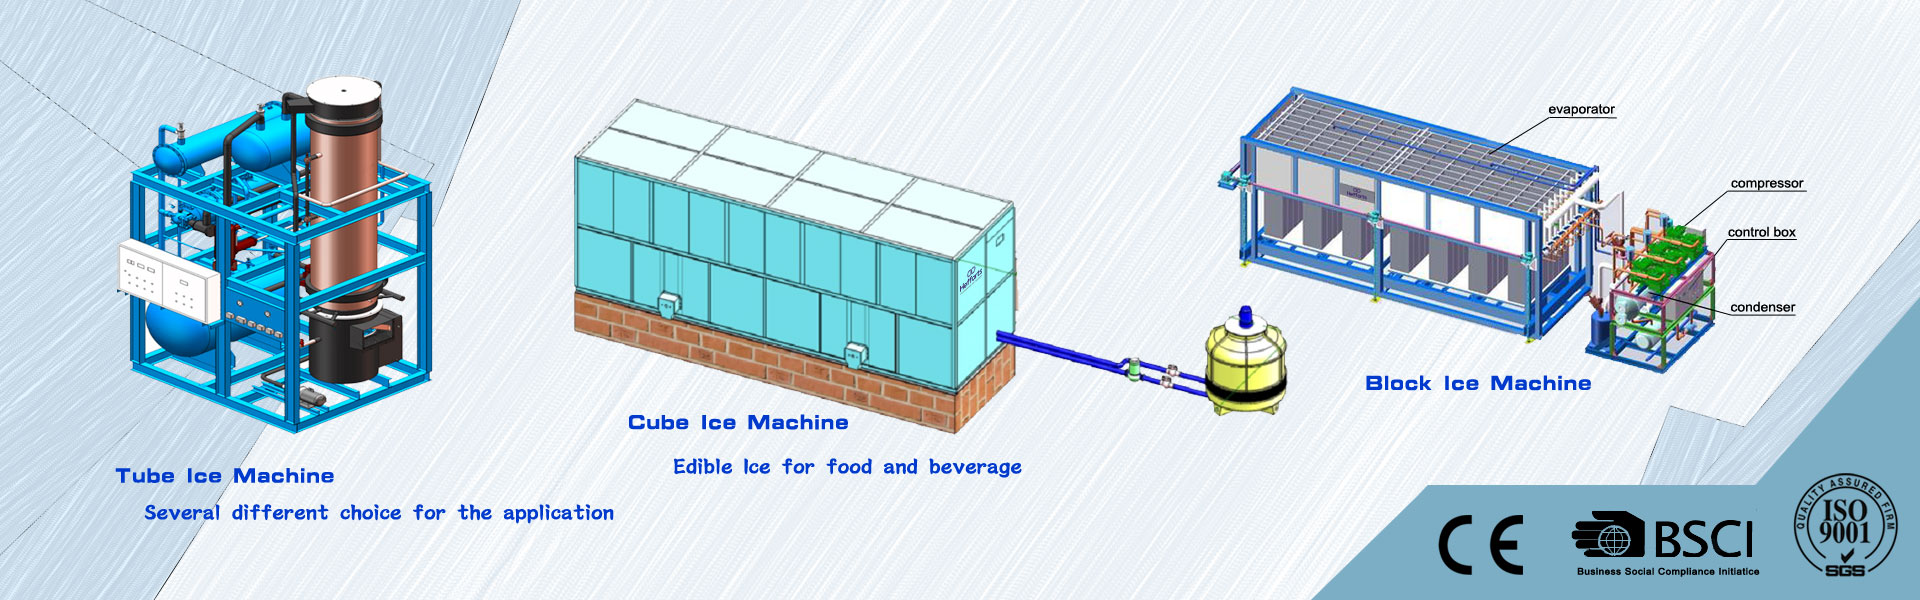 آلة الجليد ، صانع الثلج ، غرفة باردة,Guangzhou Hefforts Refrigeration Equipment Co.,Ltd.